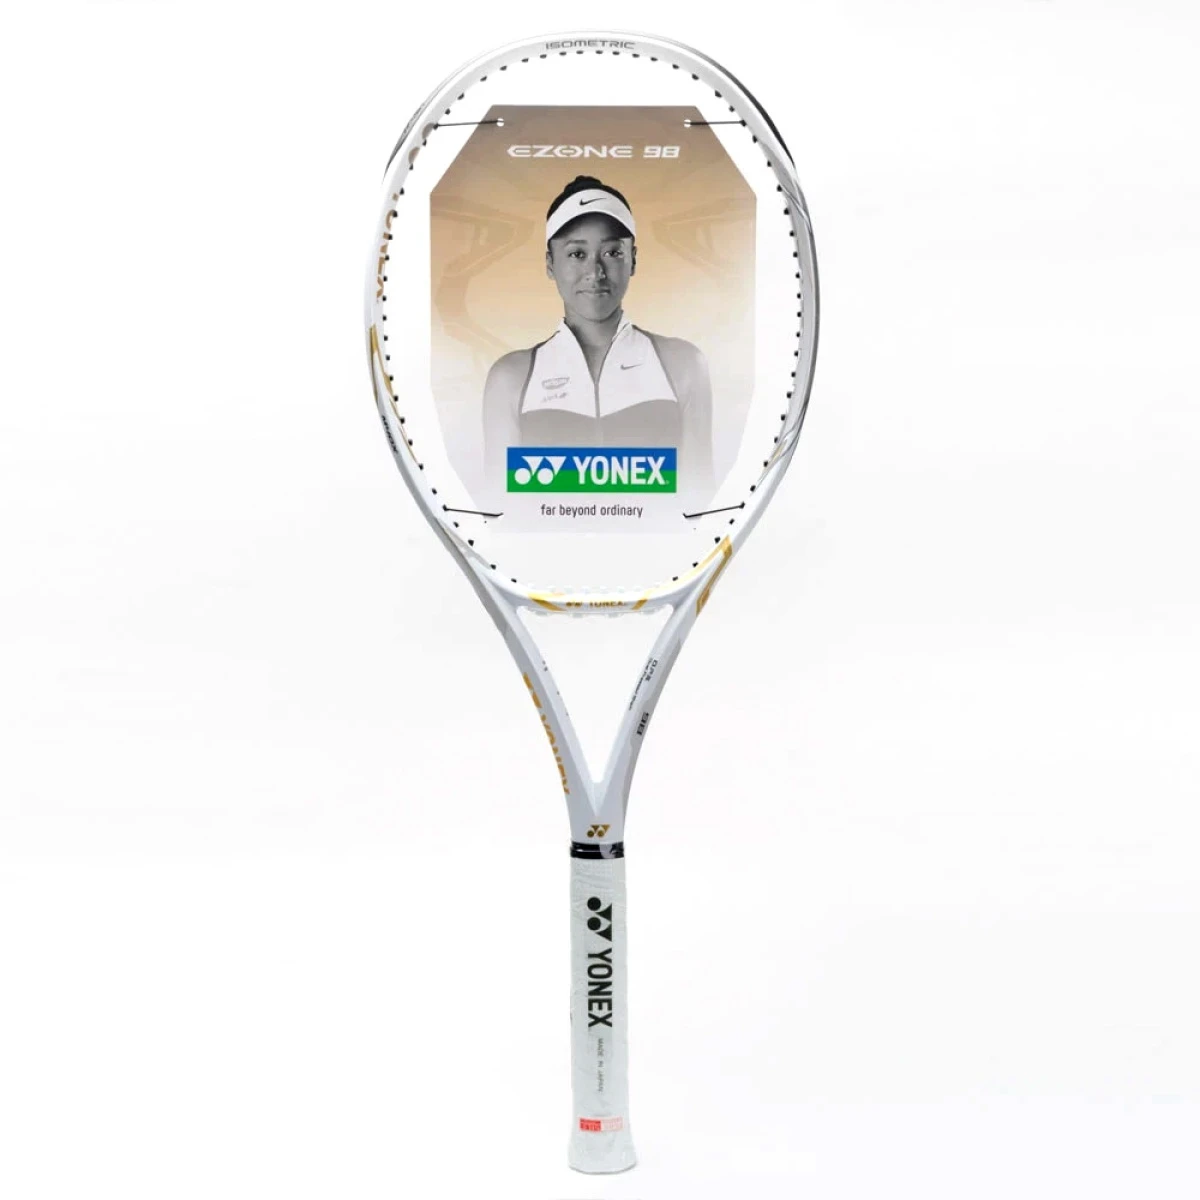 Buy Yonex Ezone 98 Osaka Limited Edition Racket (305g